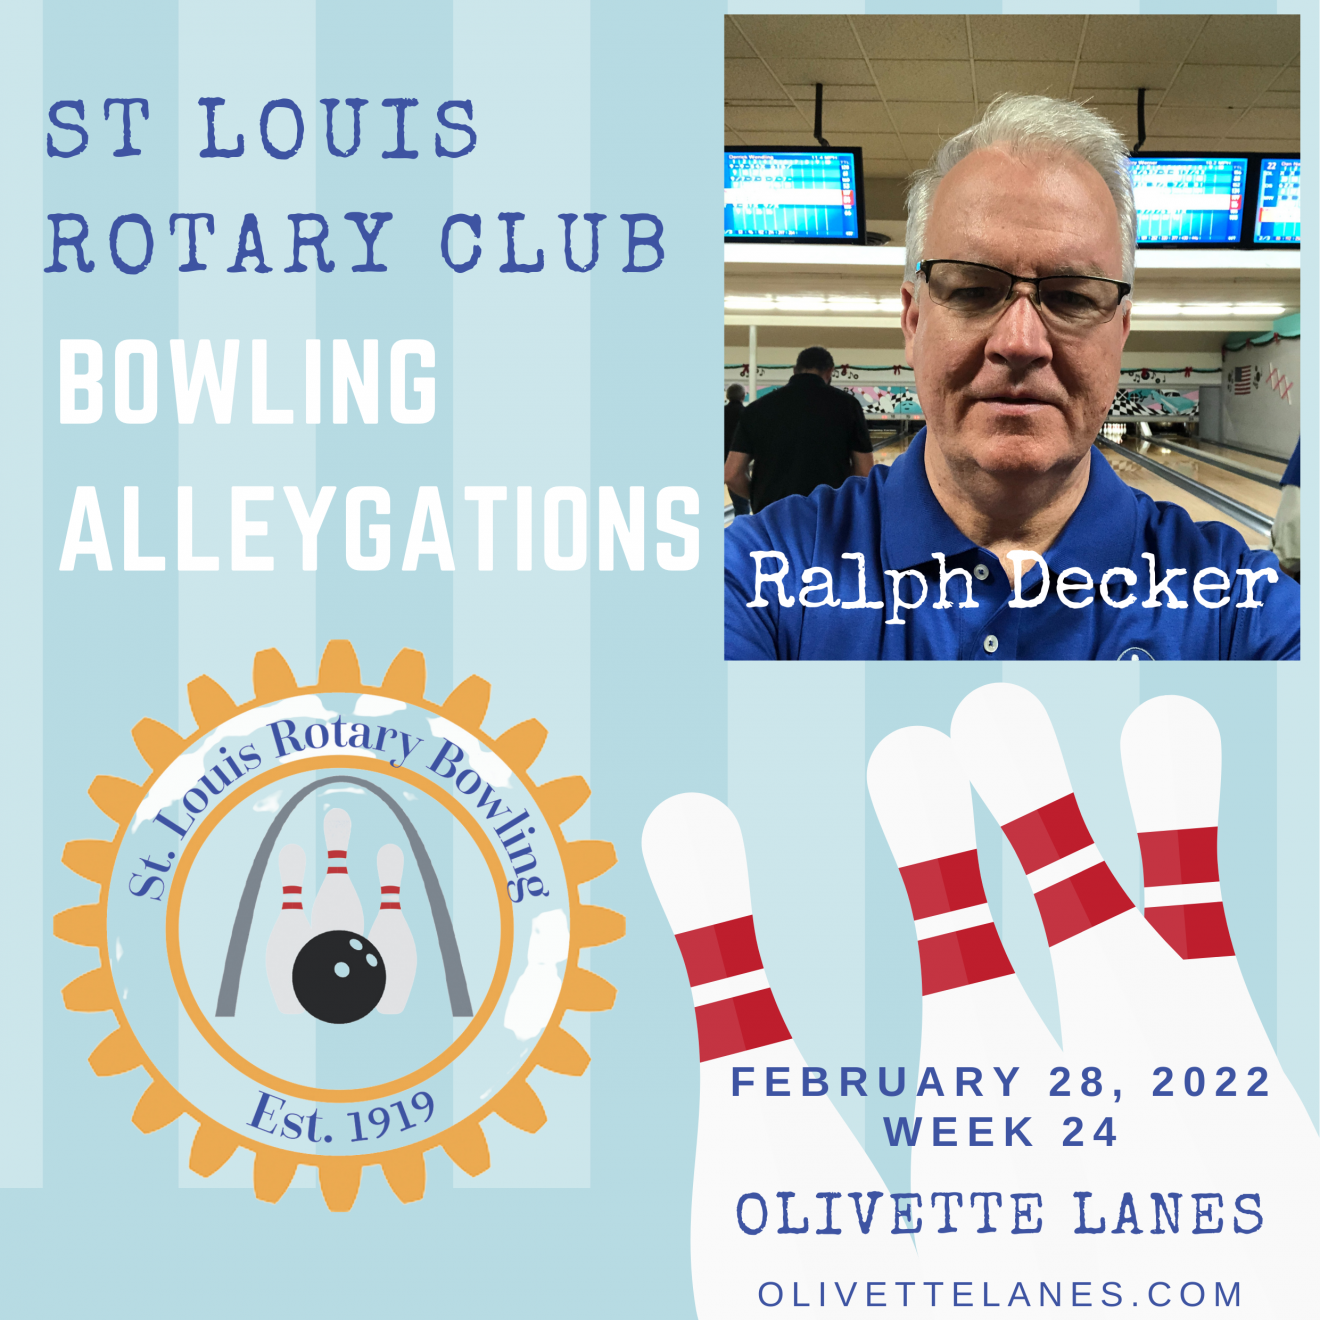 Bowling League Alleygations Week 24 Ralph Decker 2-28-22